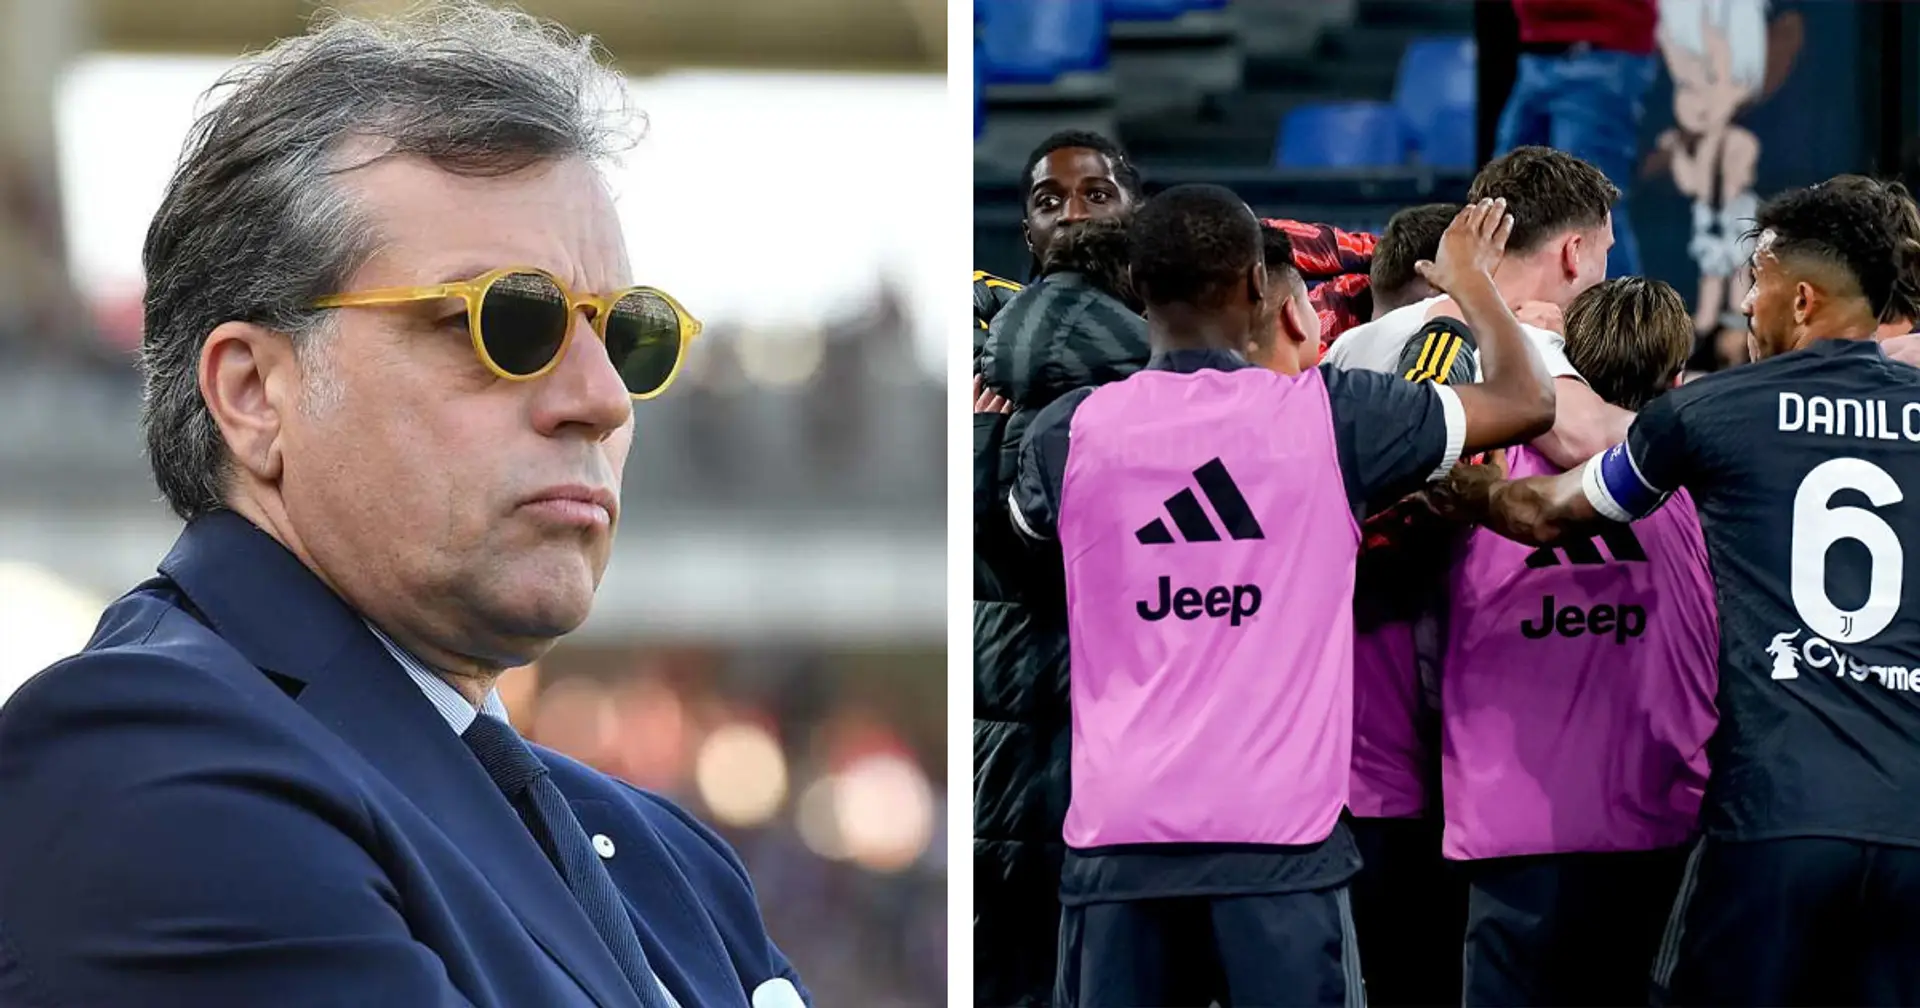 5 cessioni per finanziare il mercato: la Juventus ha deciso chi sarà sacrificato in estate, i nomi